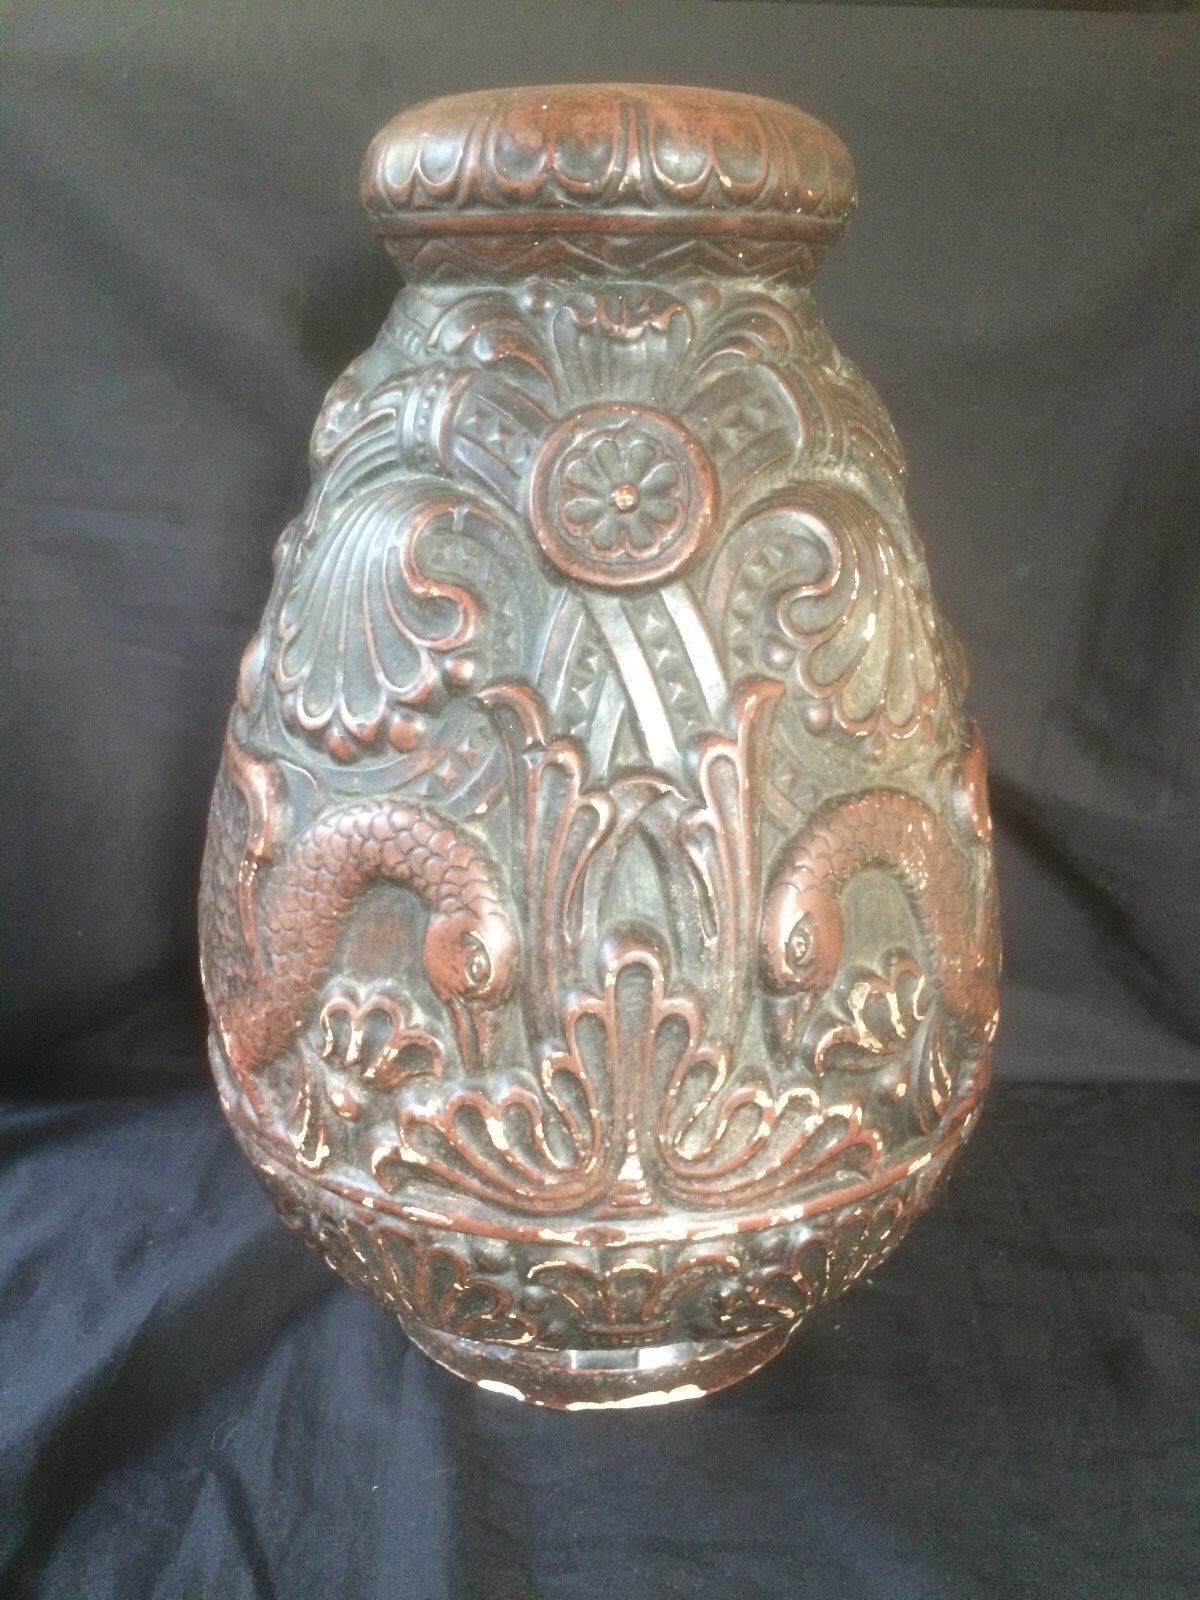 Primary image for Exclusive Antique pottery Jugendstil large vase with Swans Motive